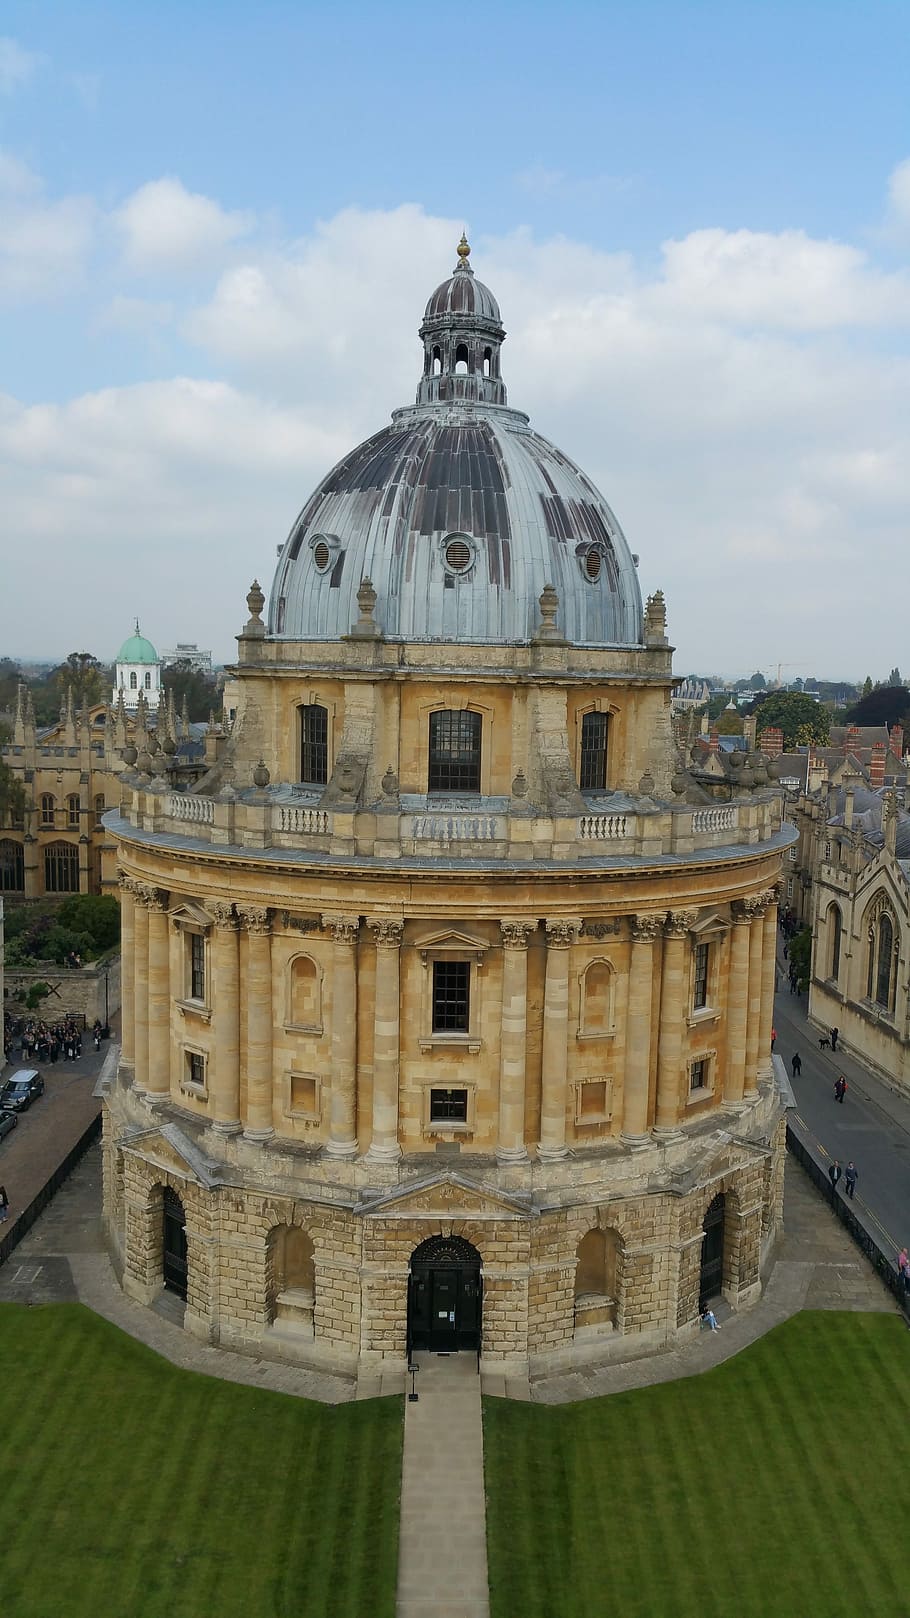 Oxford, Bersejarah, Kota, Inggris, kamera radcliffe, kubah, arsitektur, eksterior bangunan, awan - langit, tujuan perjalanan